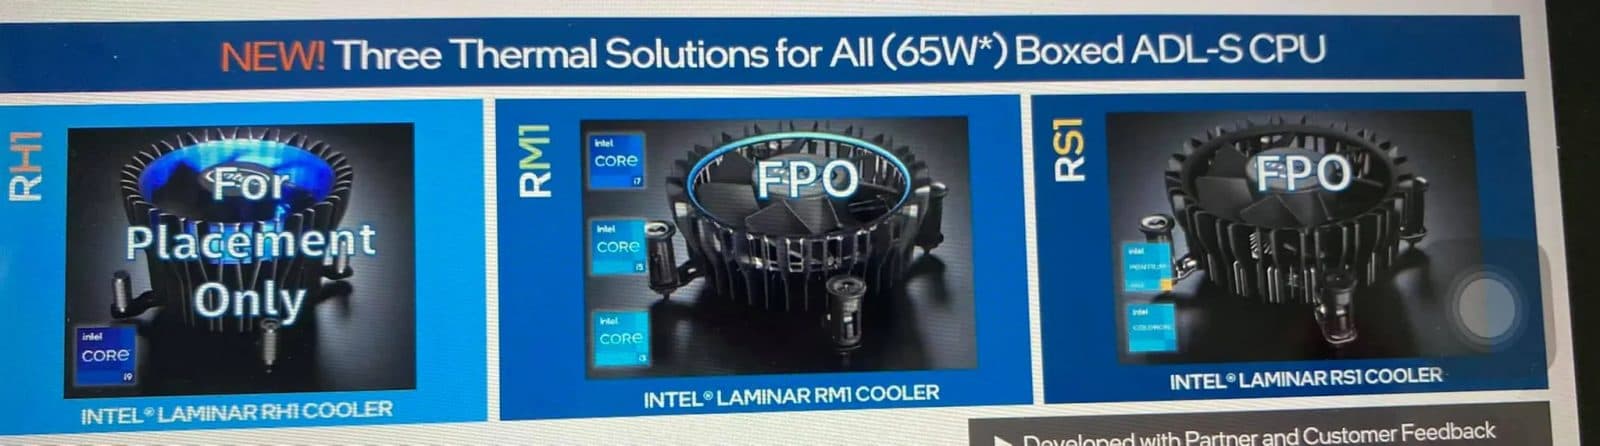 Intel Laminar CPUクーラーシリーズ